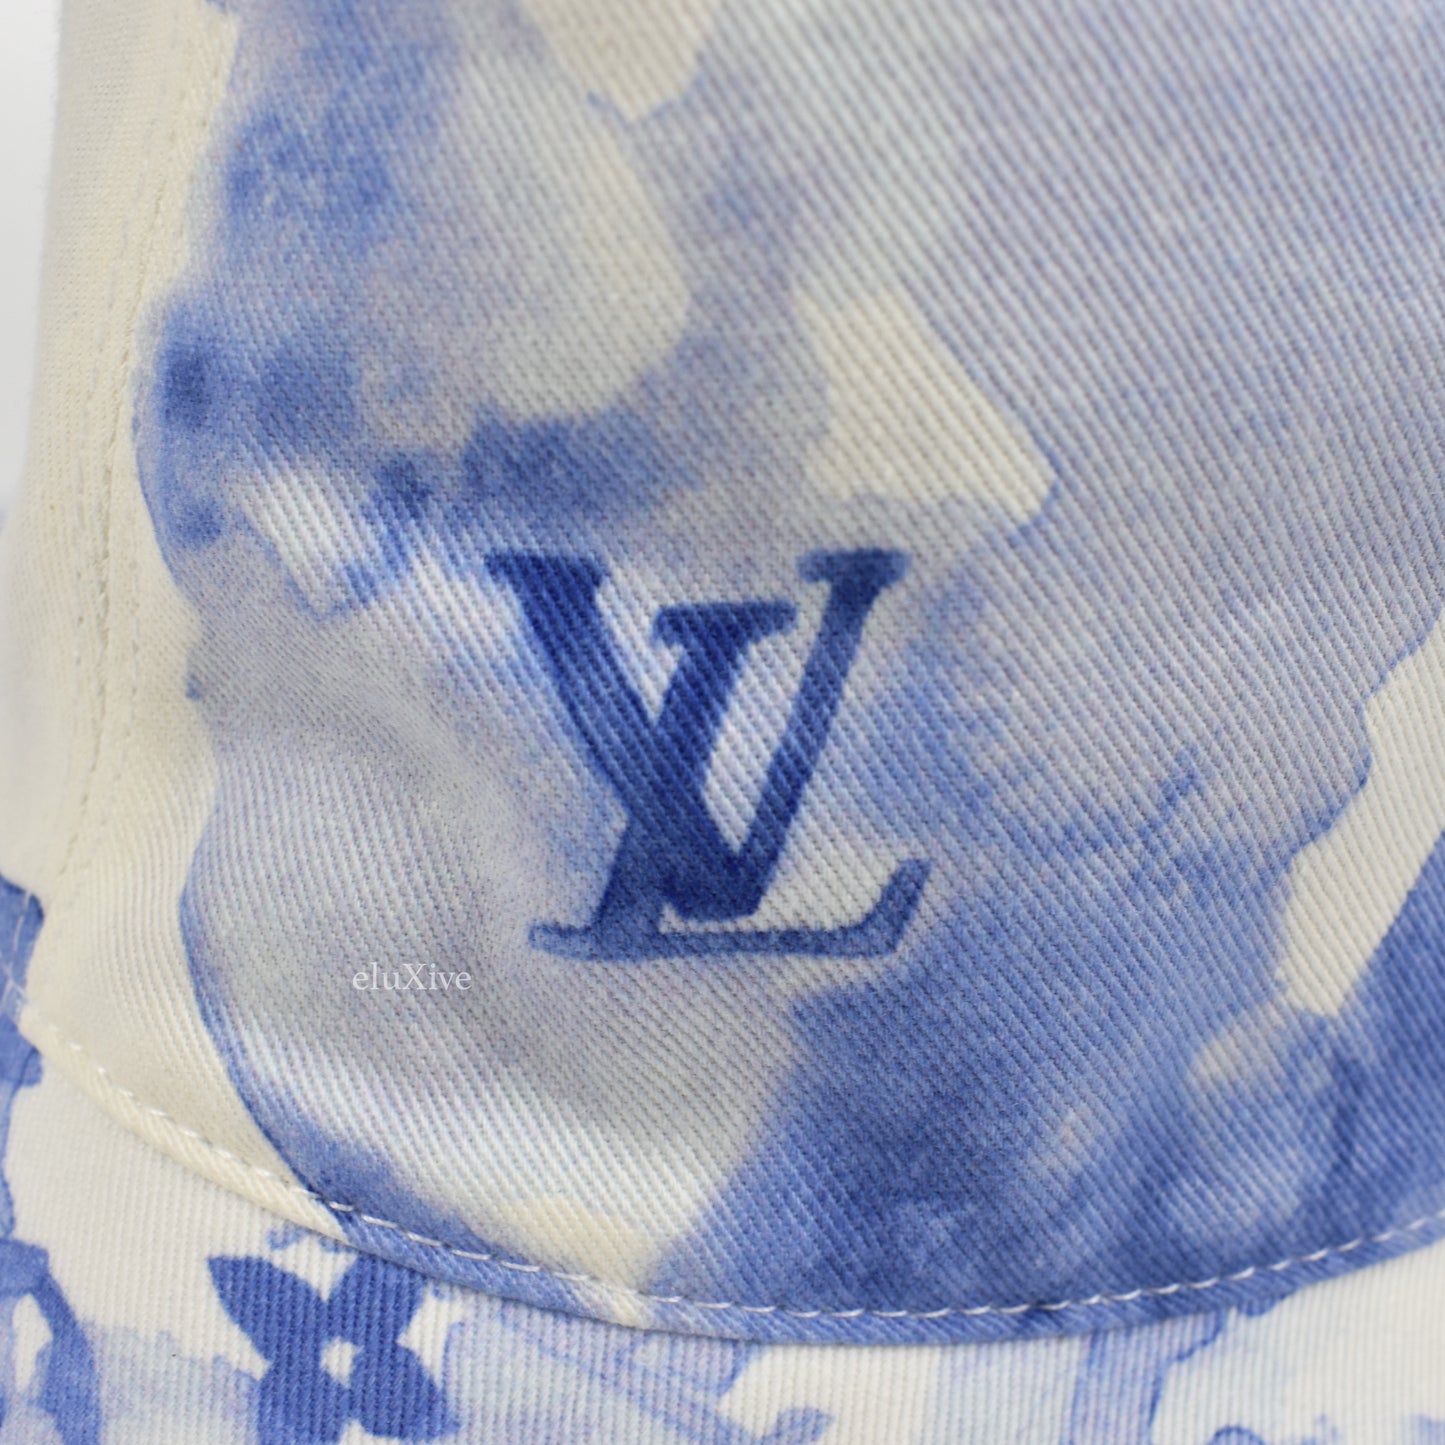 Louis Vuitton - Watercolor Monogram Bucket Hat